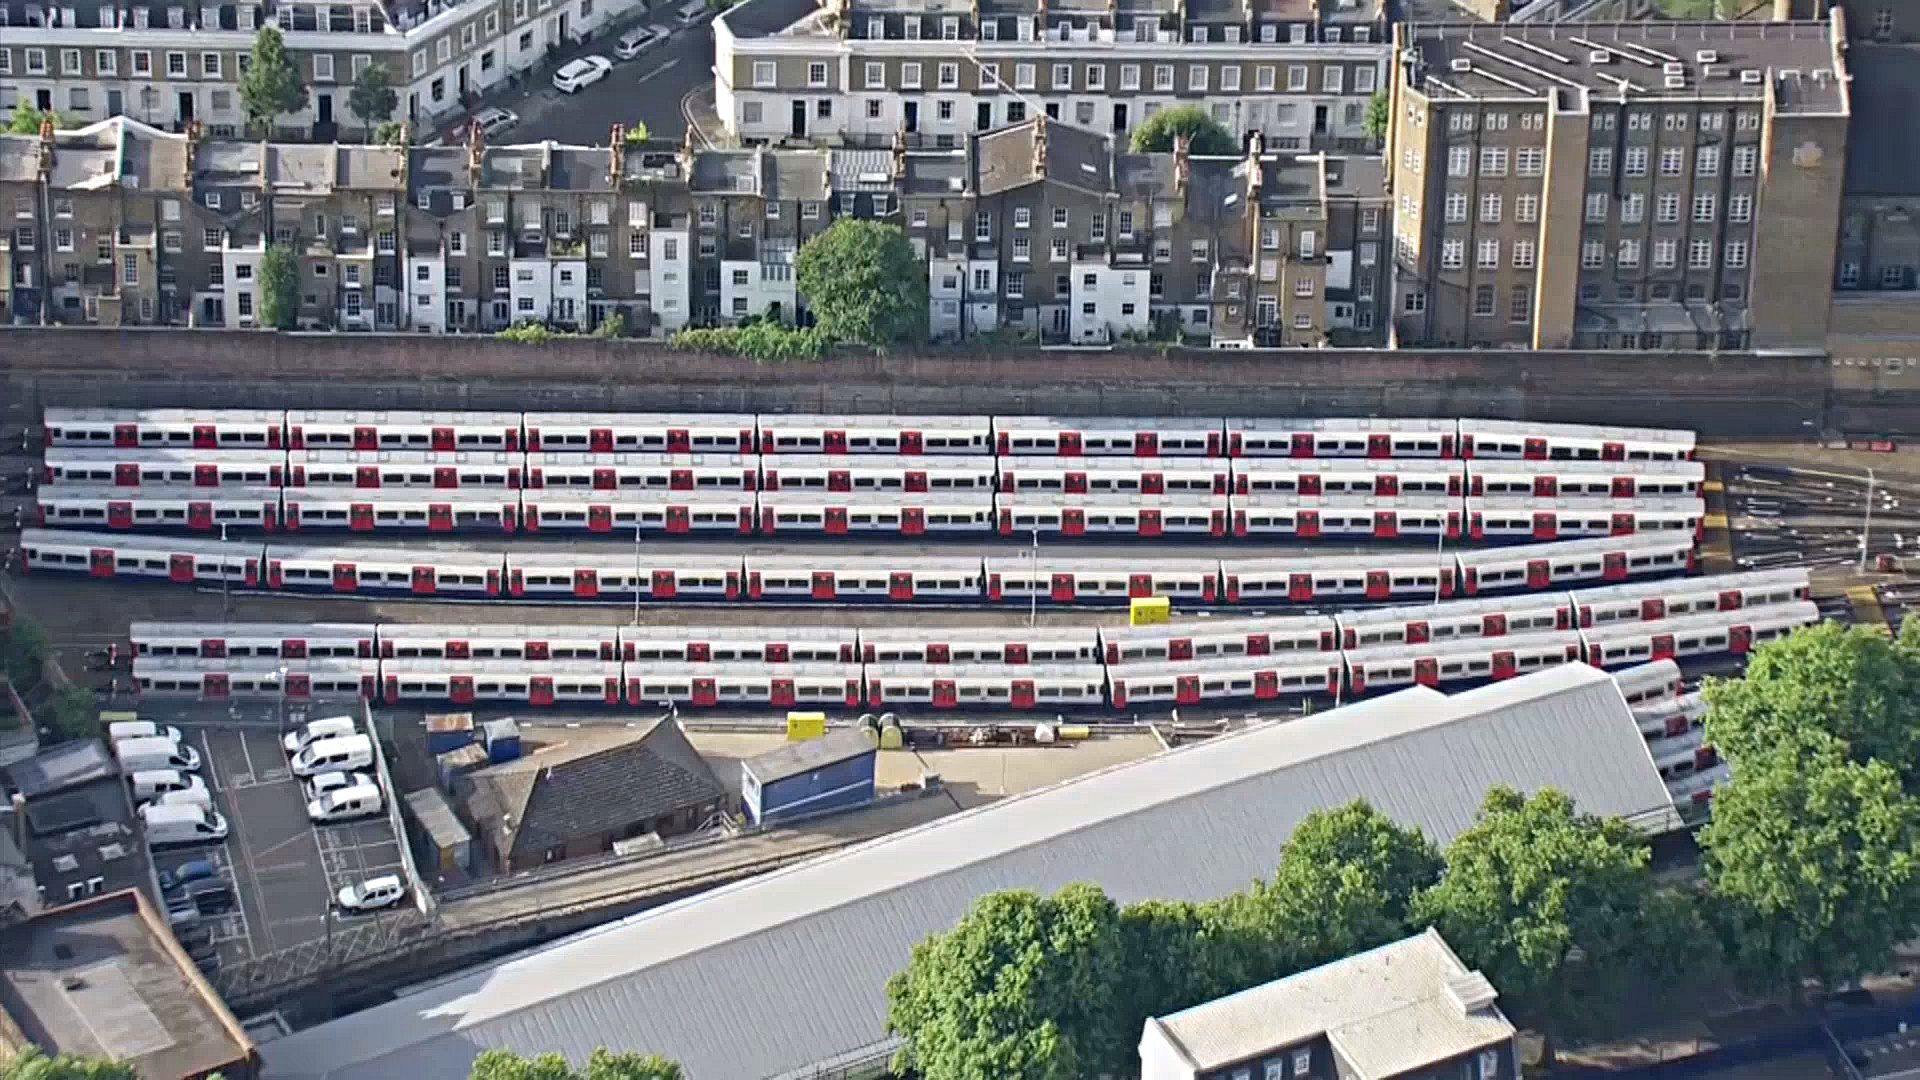 Крупнейшая за 30 лет забастовка железнодорожников проходит в Великобритании